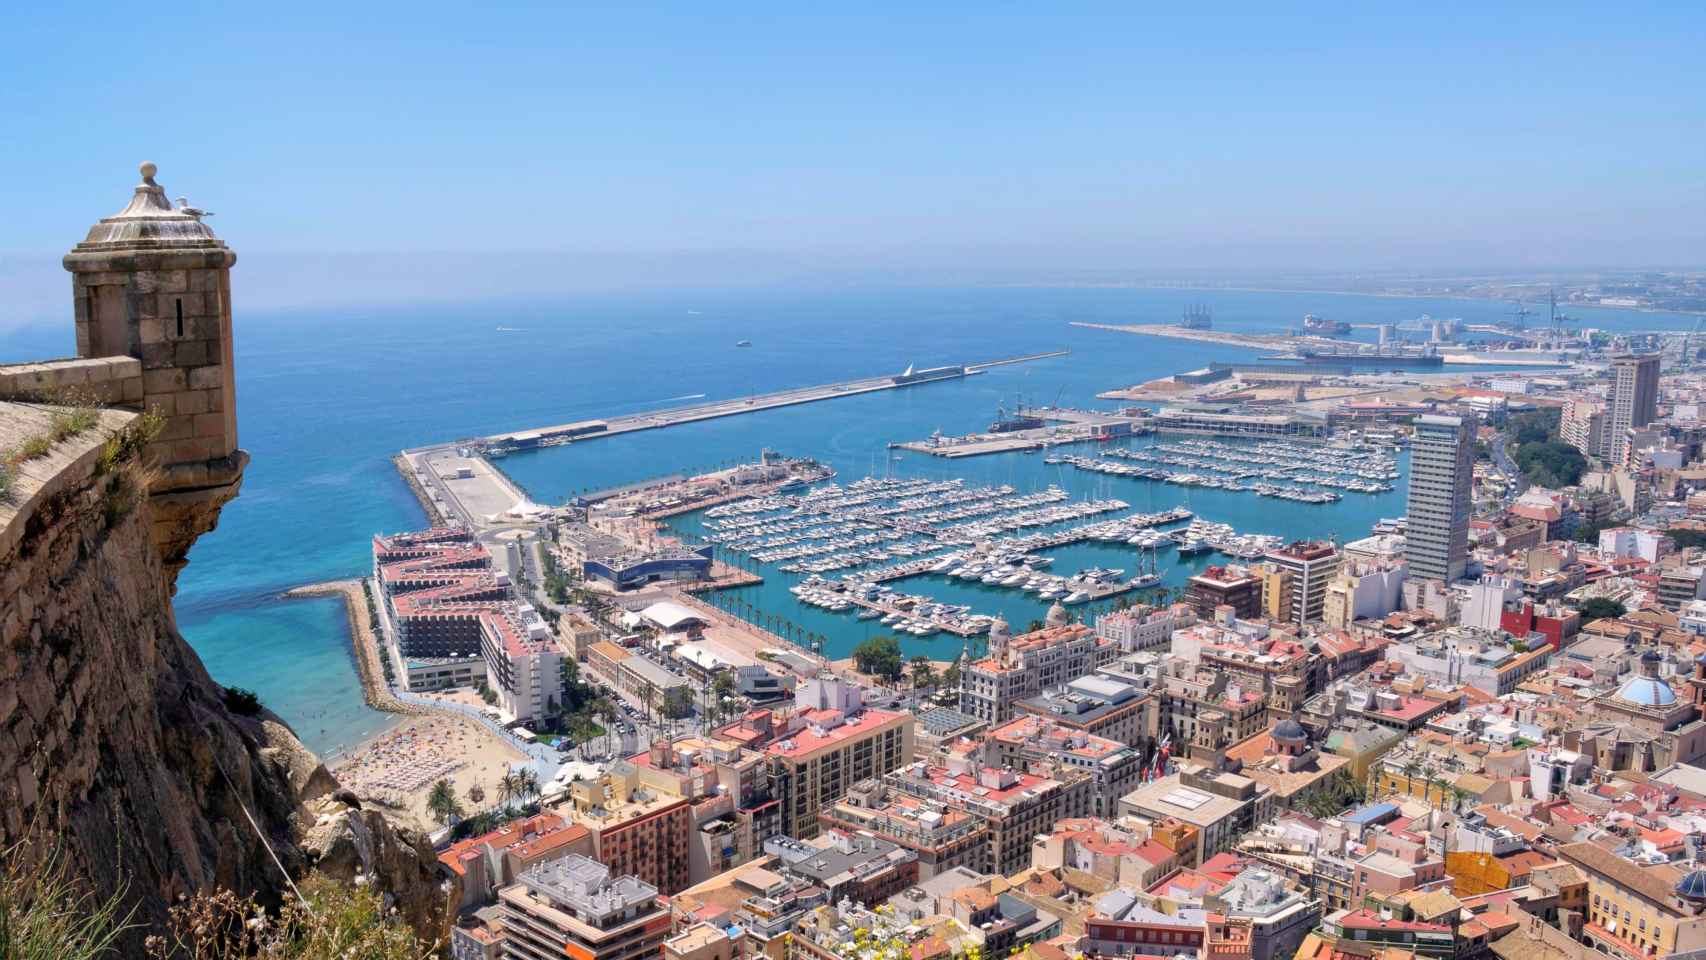 Vistas al puerto de Alicante desde el castillo.